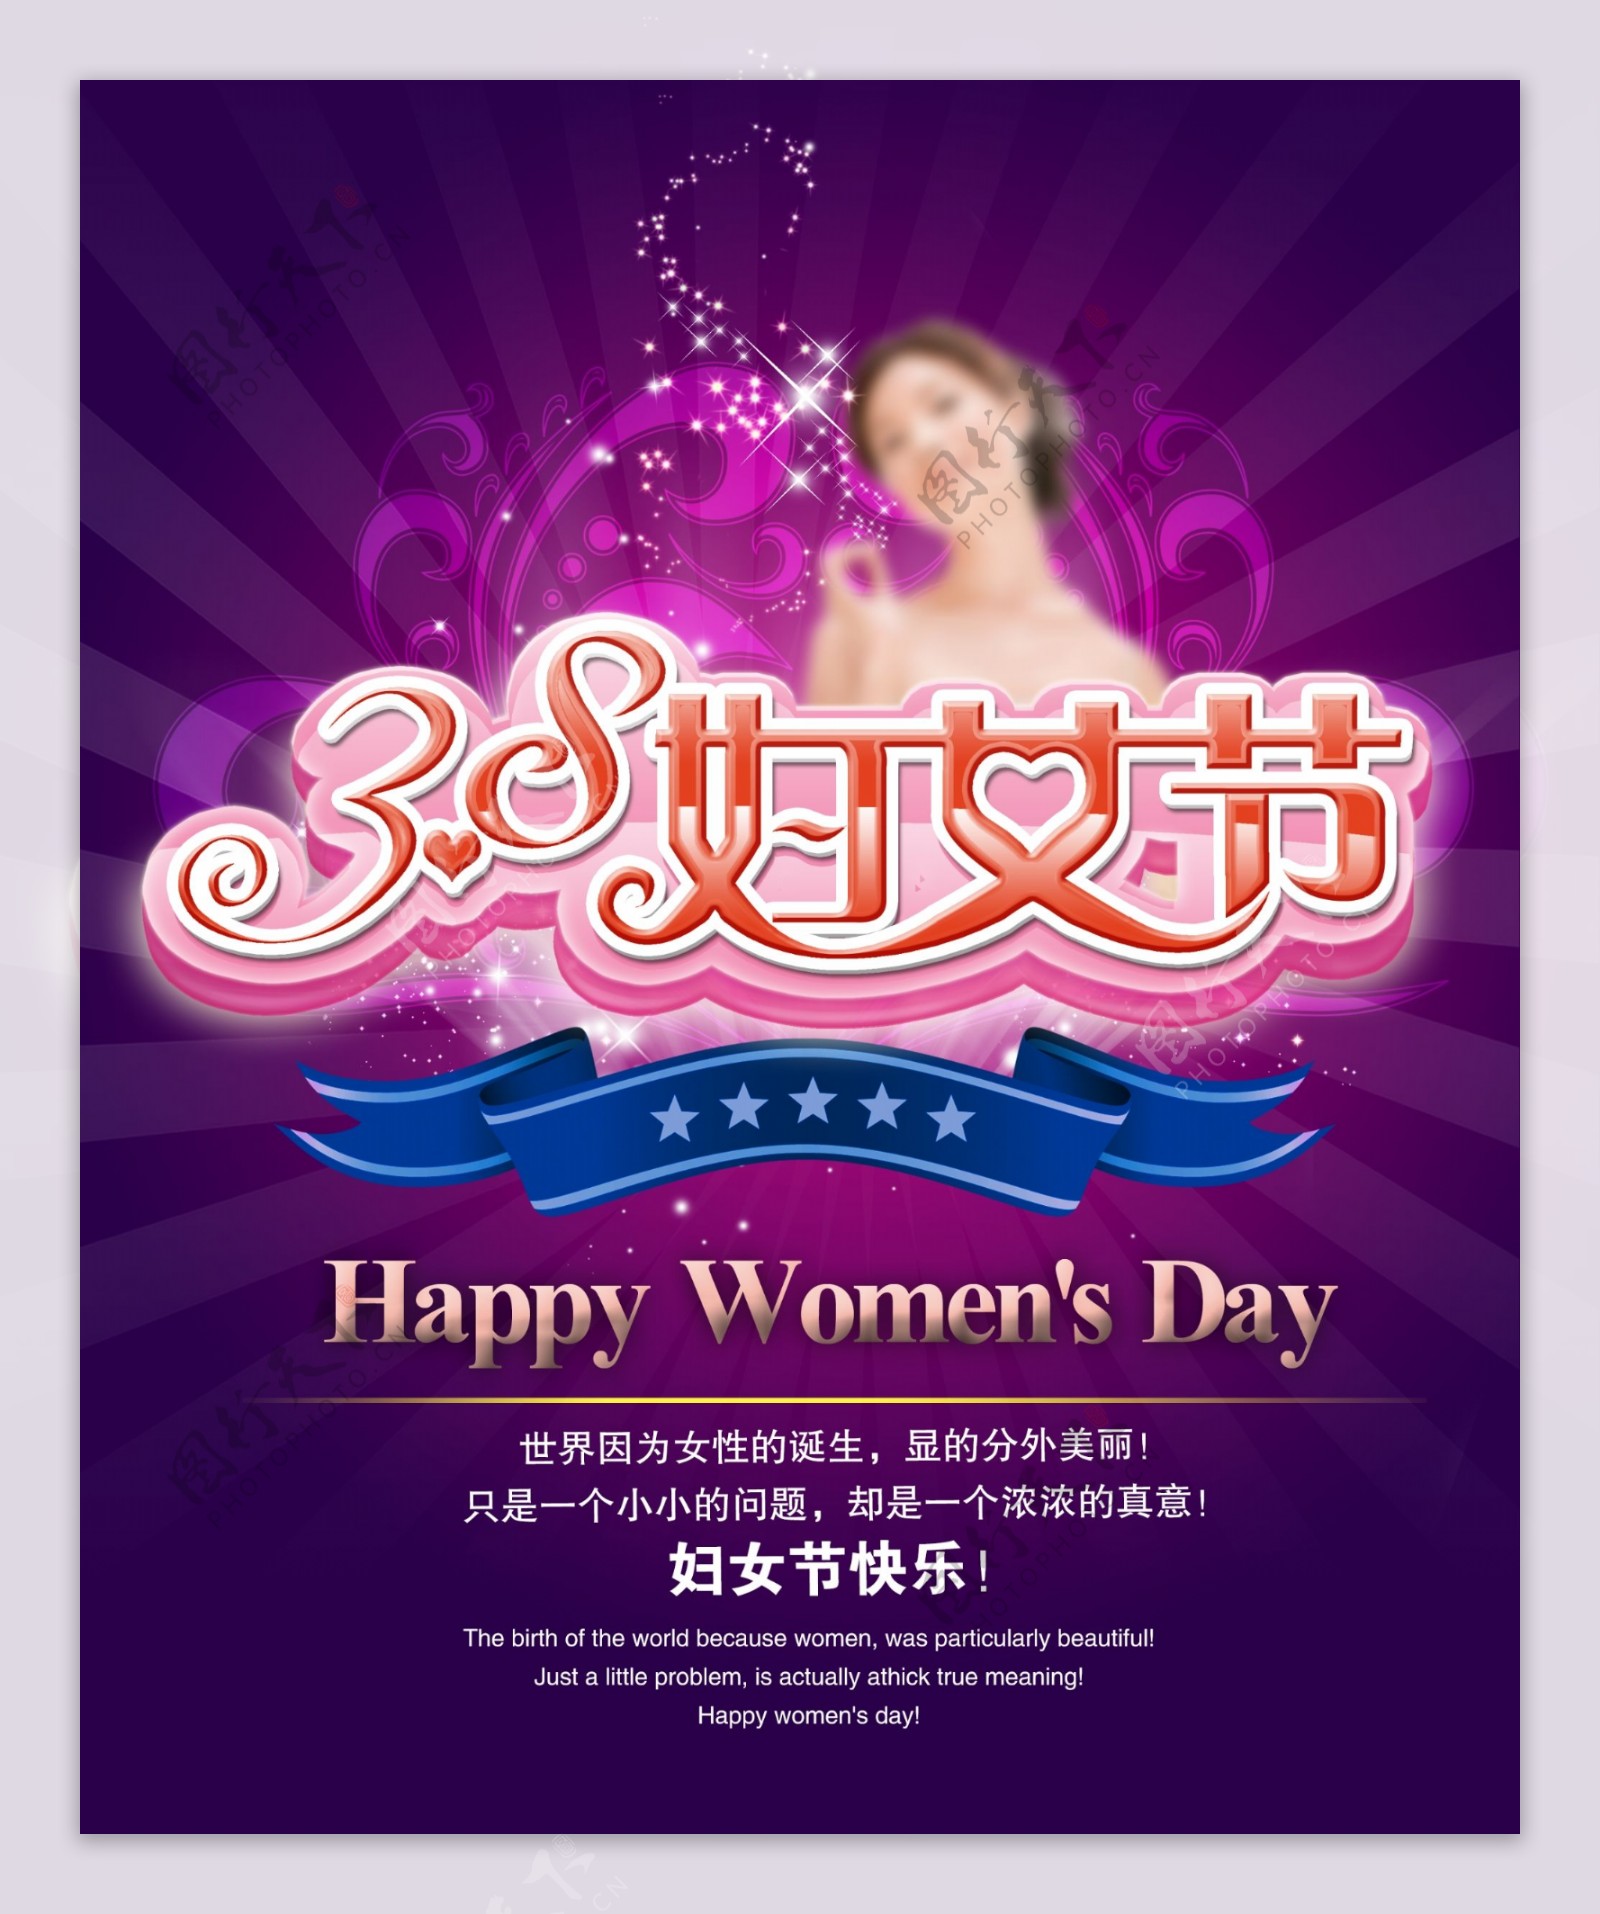 妇女节活动宣传单设计PSD素材